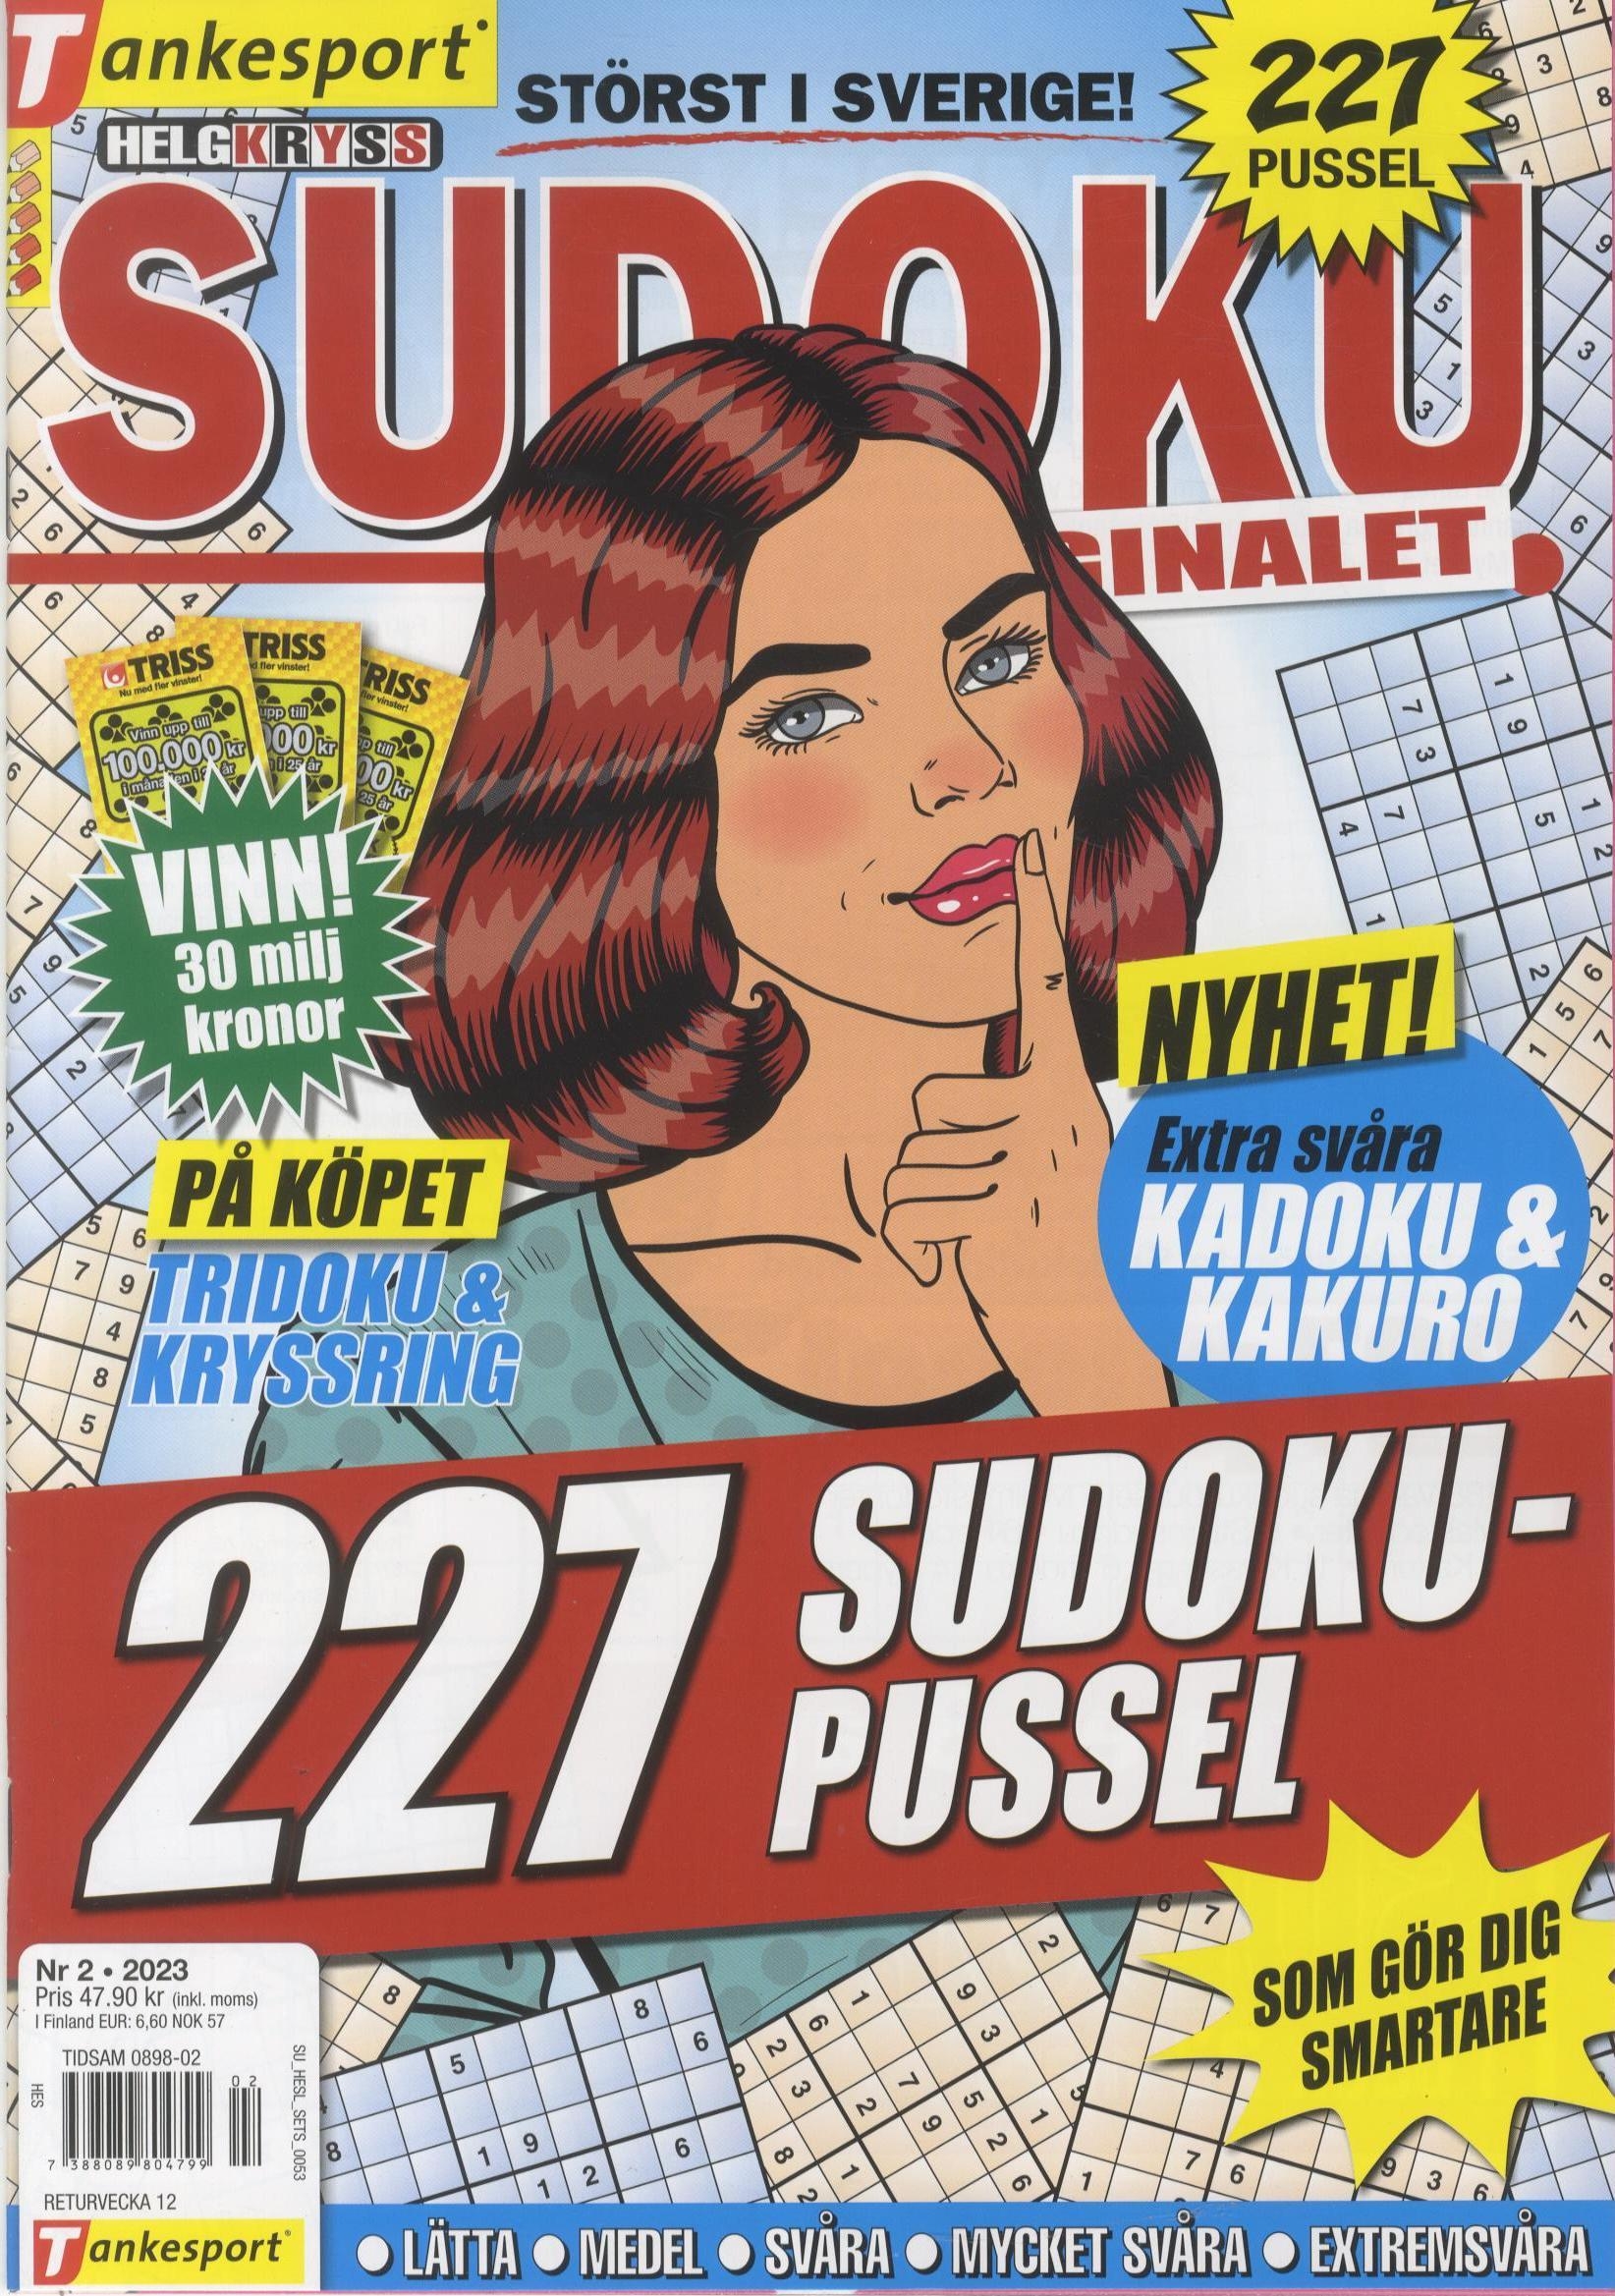 Helg Kryss-Sudoku